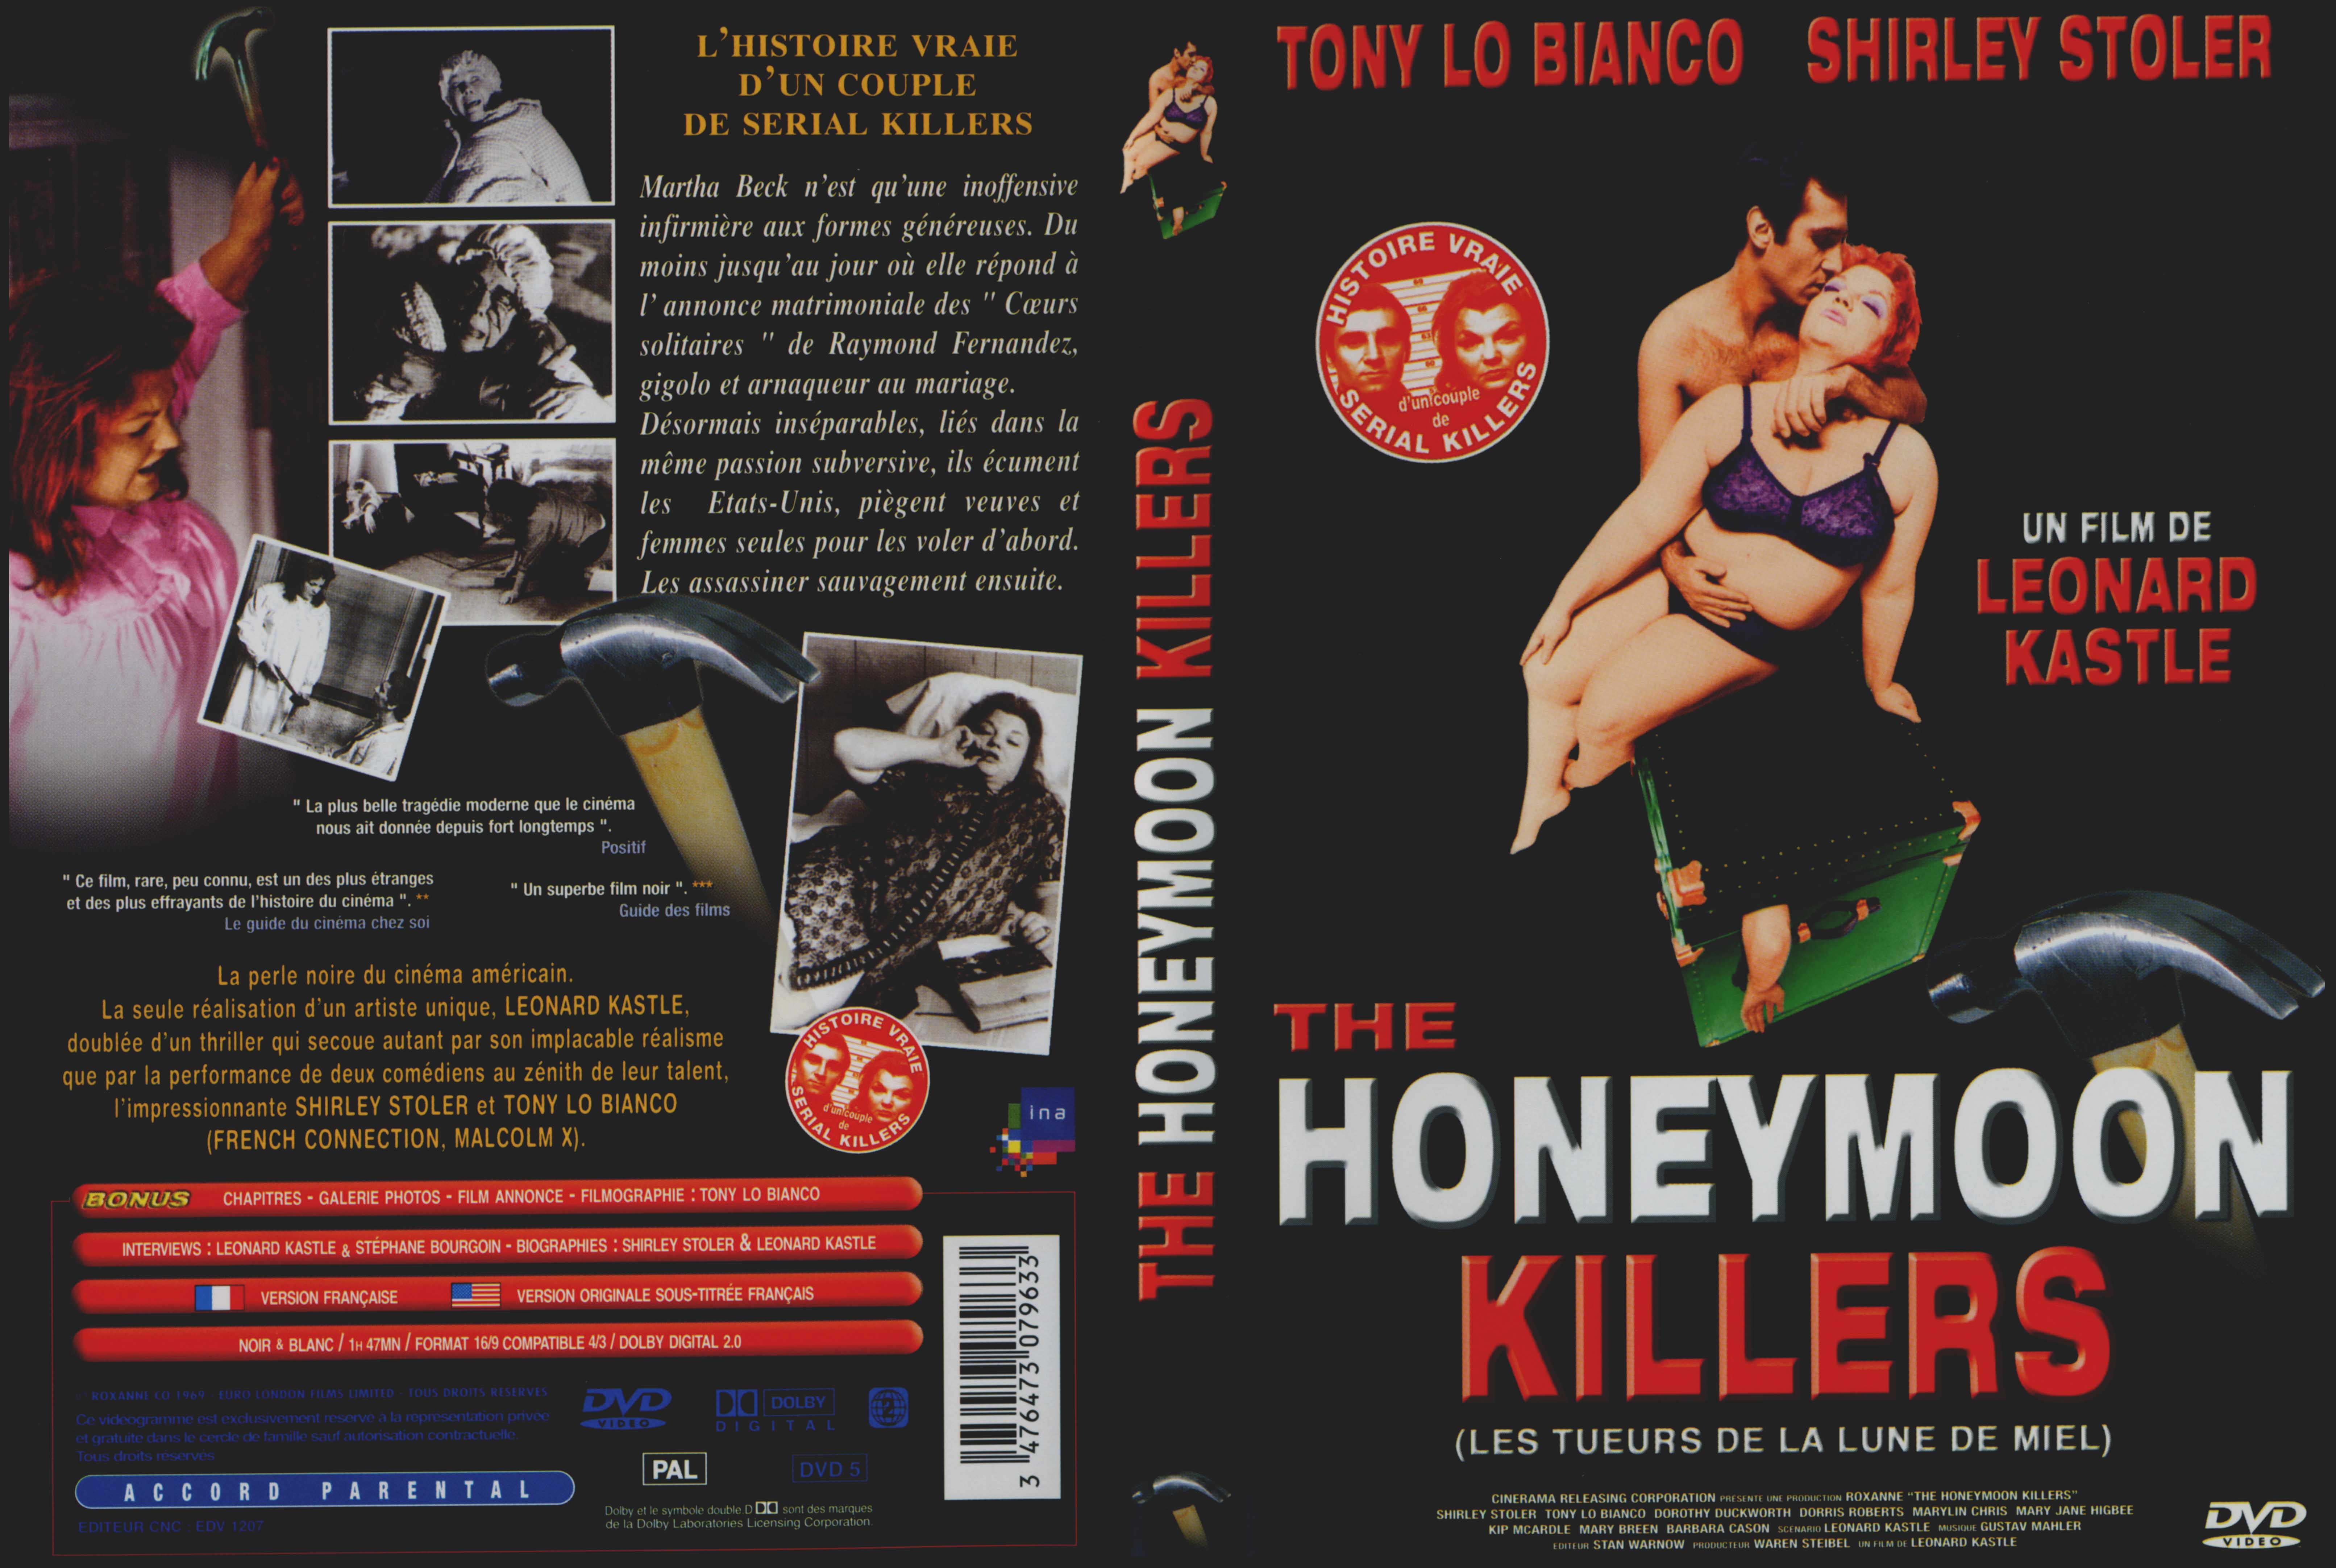 Jaquette DVD The honeymoon killers (Les tueurs de la lune de miel)